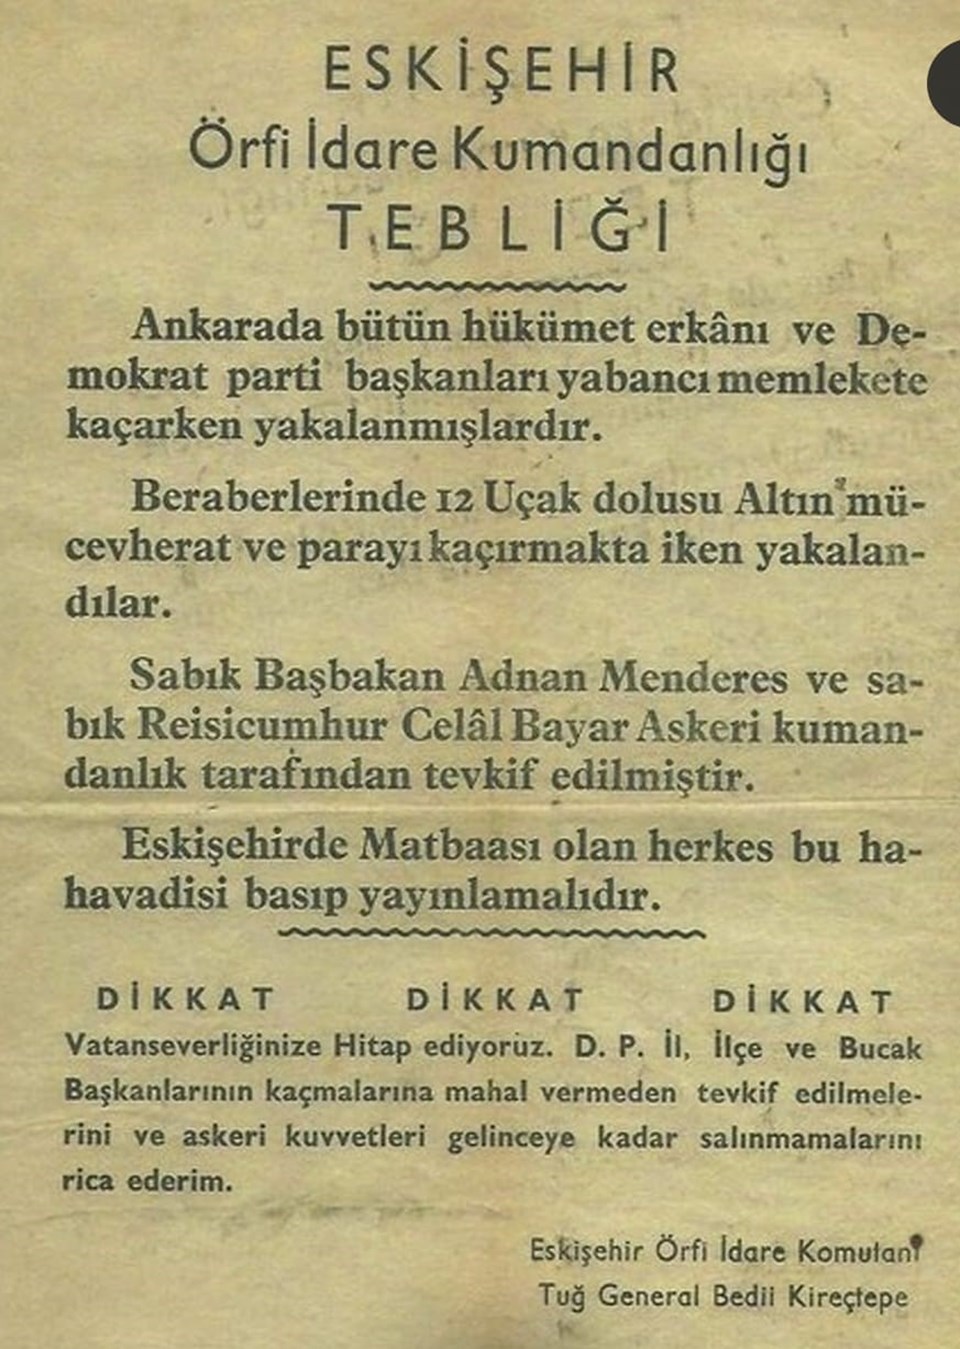 Cumhurbaşkanı Erdoğan, Eskişehir Örfi İdare Kumandanlığı'nın tebliğini gösterdi. 